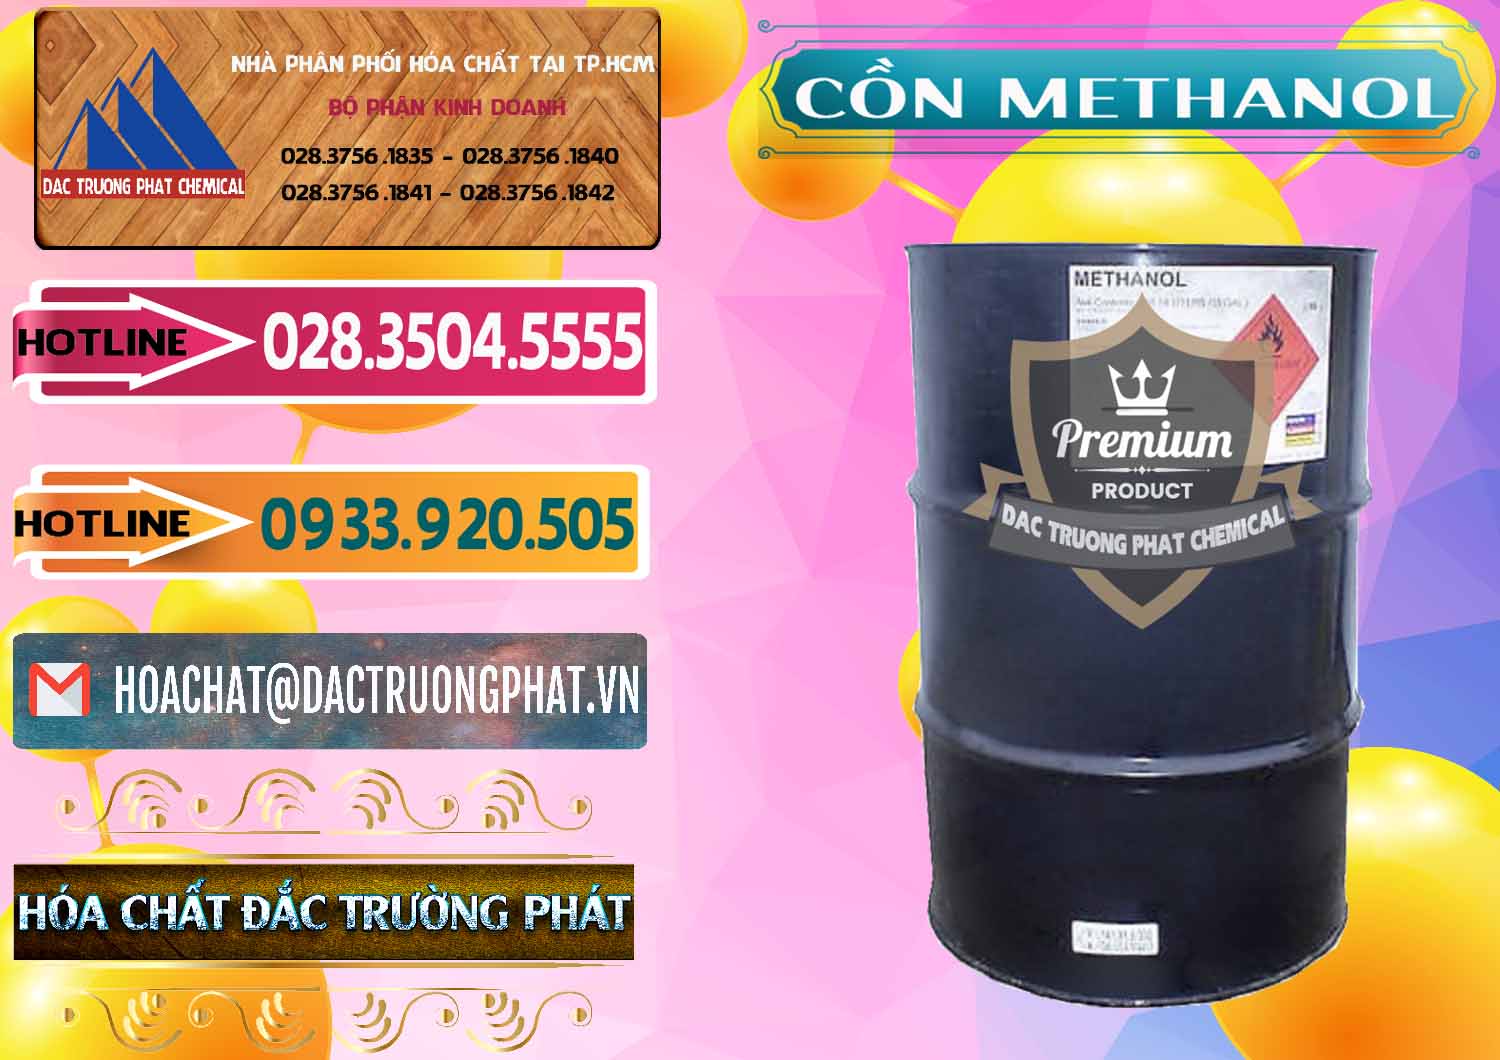 Cty chuyên bán & cung cấp Cồn Methanol - Methyl Alcohol Mã Lai Malaysia - 0331 - Đơn vị kinh doanh - phân phối hóa chất tại TP.HCM - dactruongphat.vn